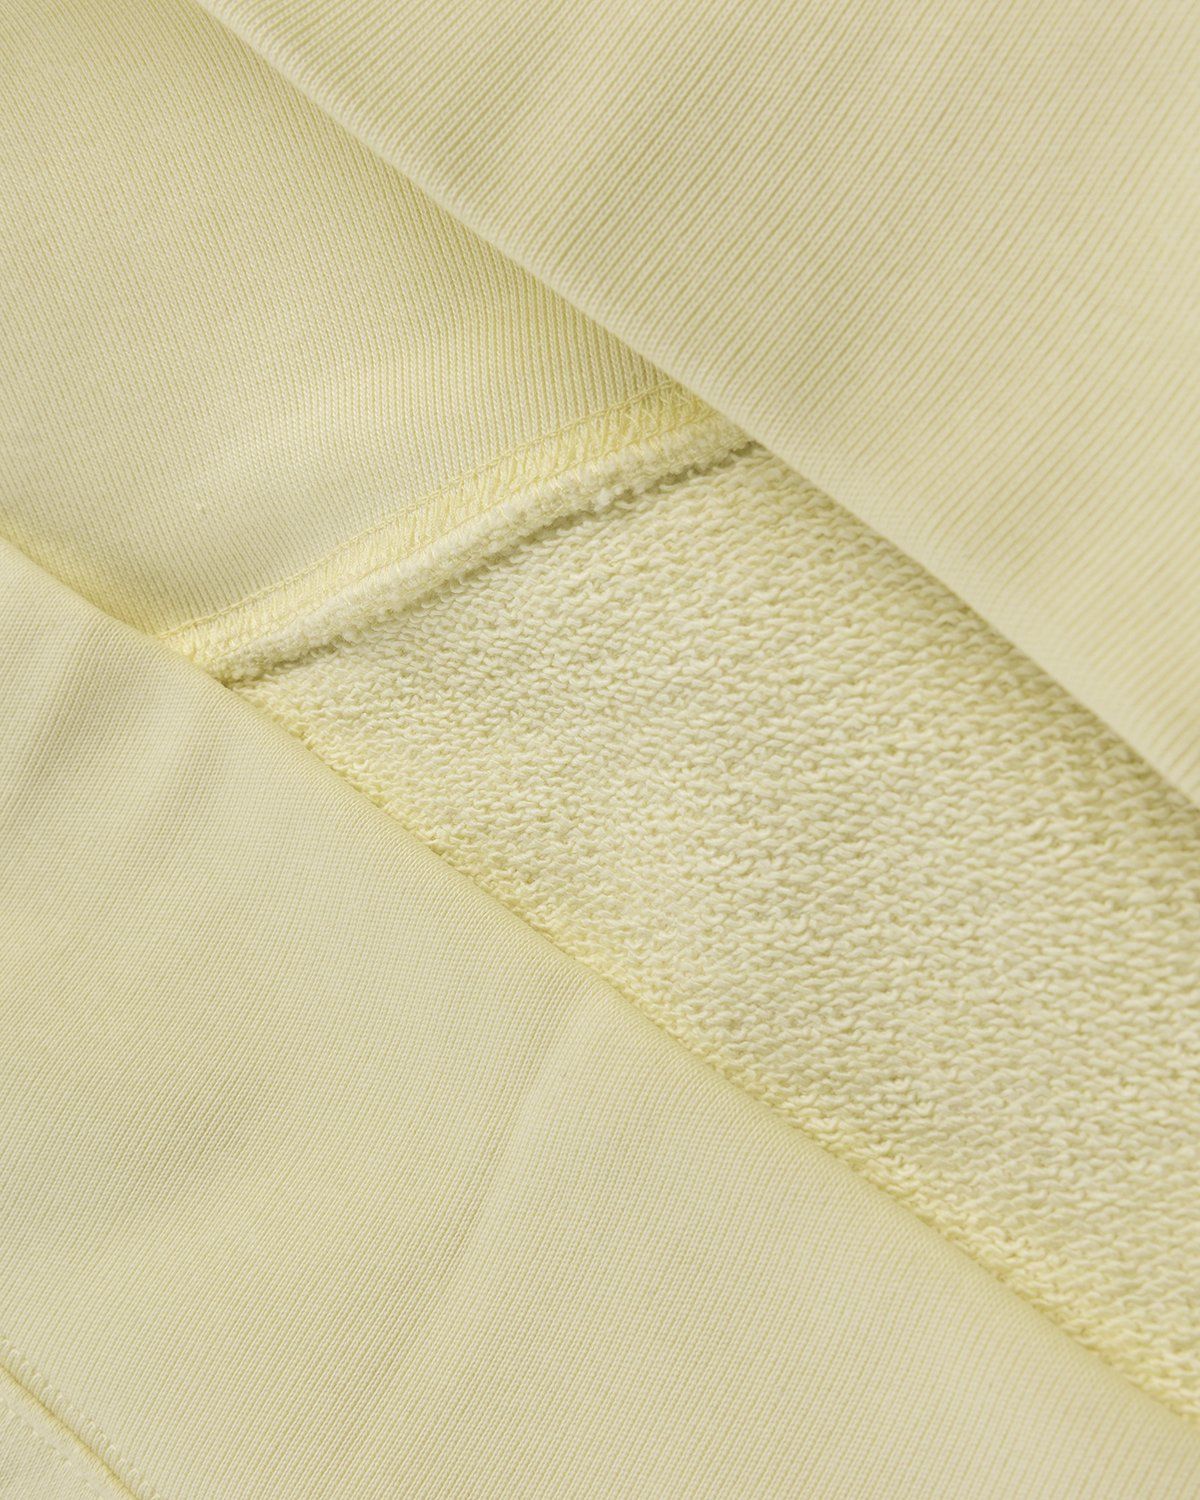 Acne Studios – Organic Cotton Hooded Sweatshirt Vanilla Yellow - Sweats - Yellow - Image 3